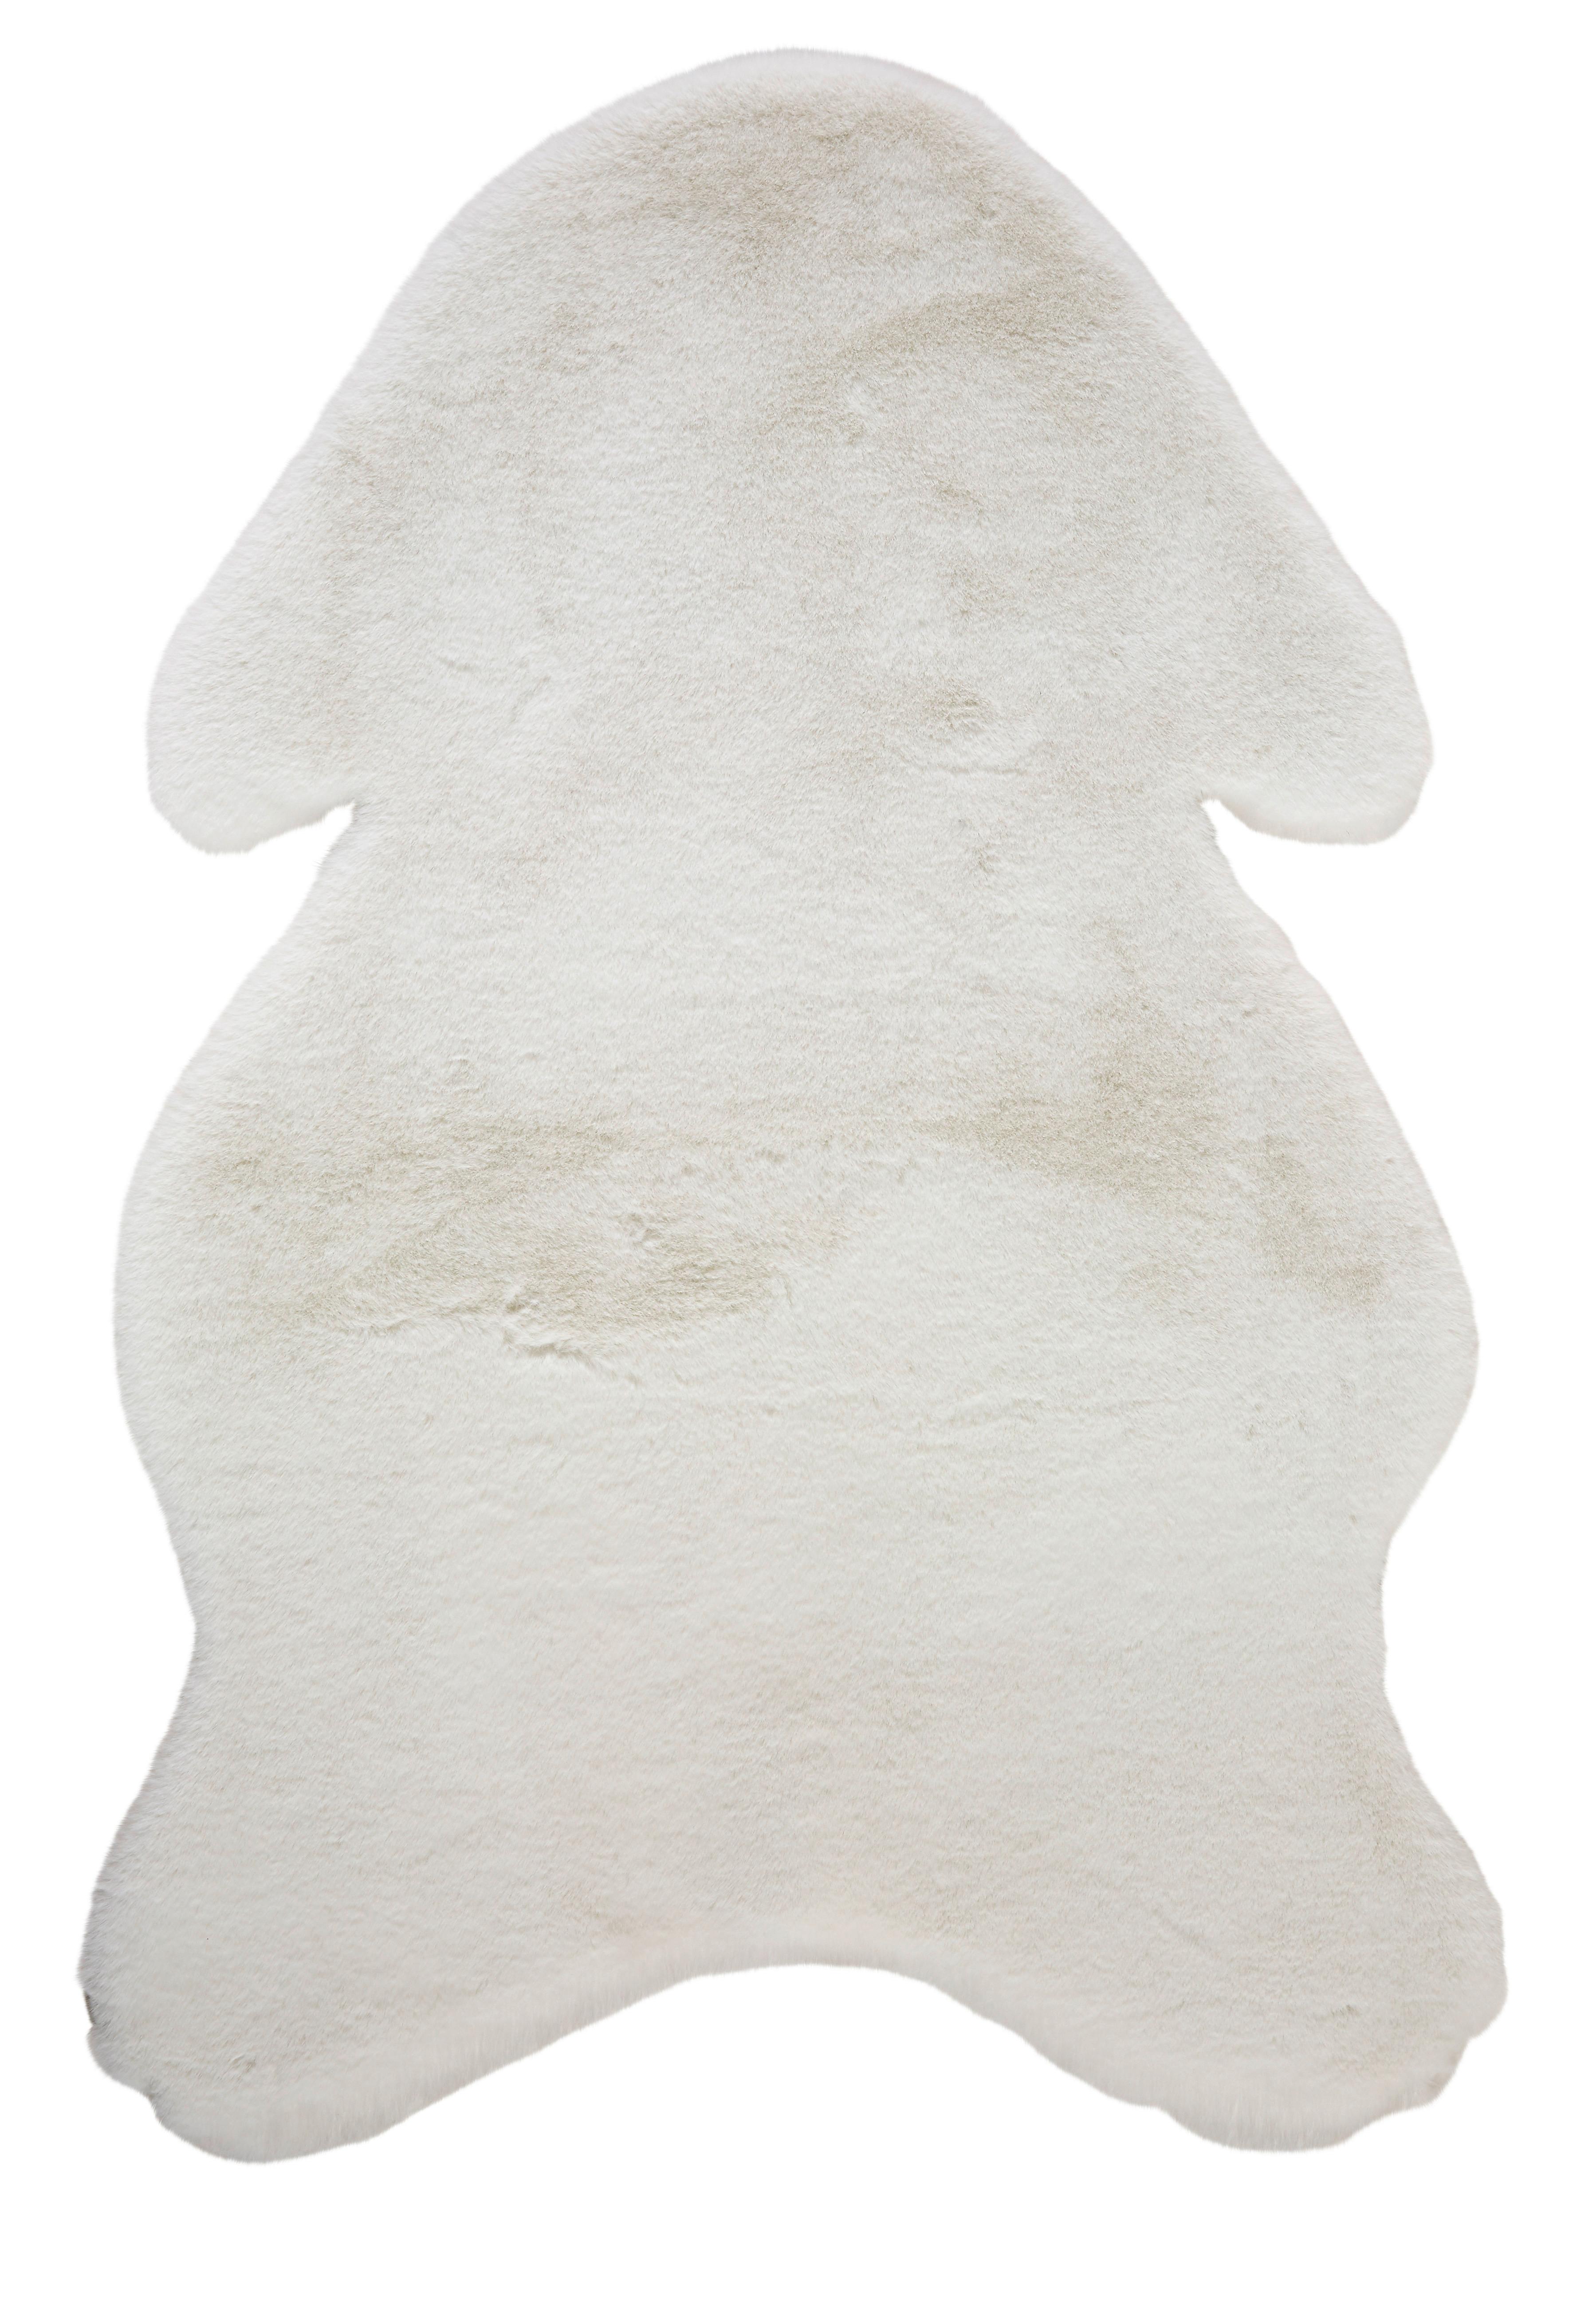 Umělá Kožešina Marlene, 90/60cm, Bílá - bílá, kožešina/textil (90/60cm) - Modern Living